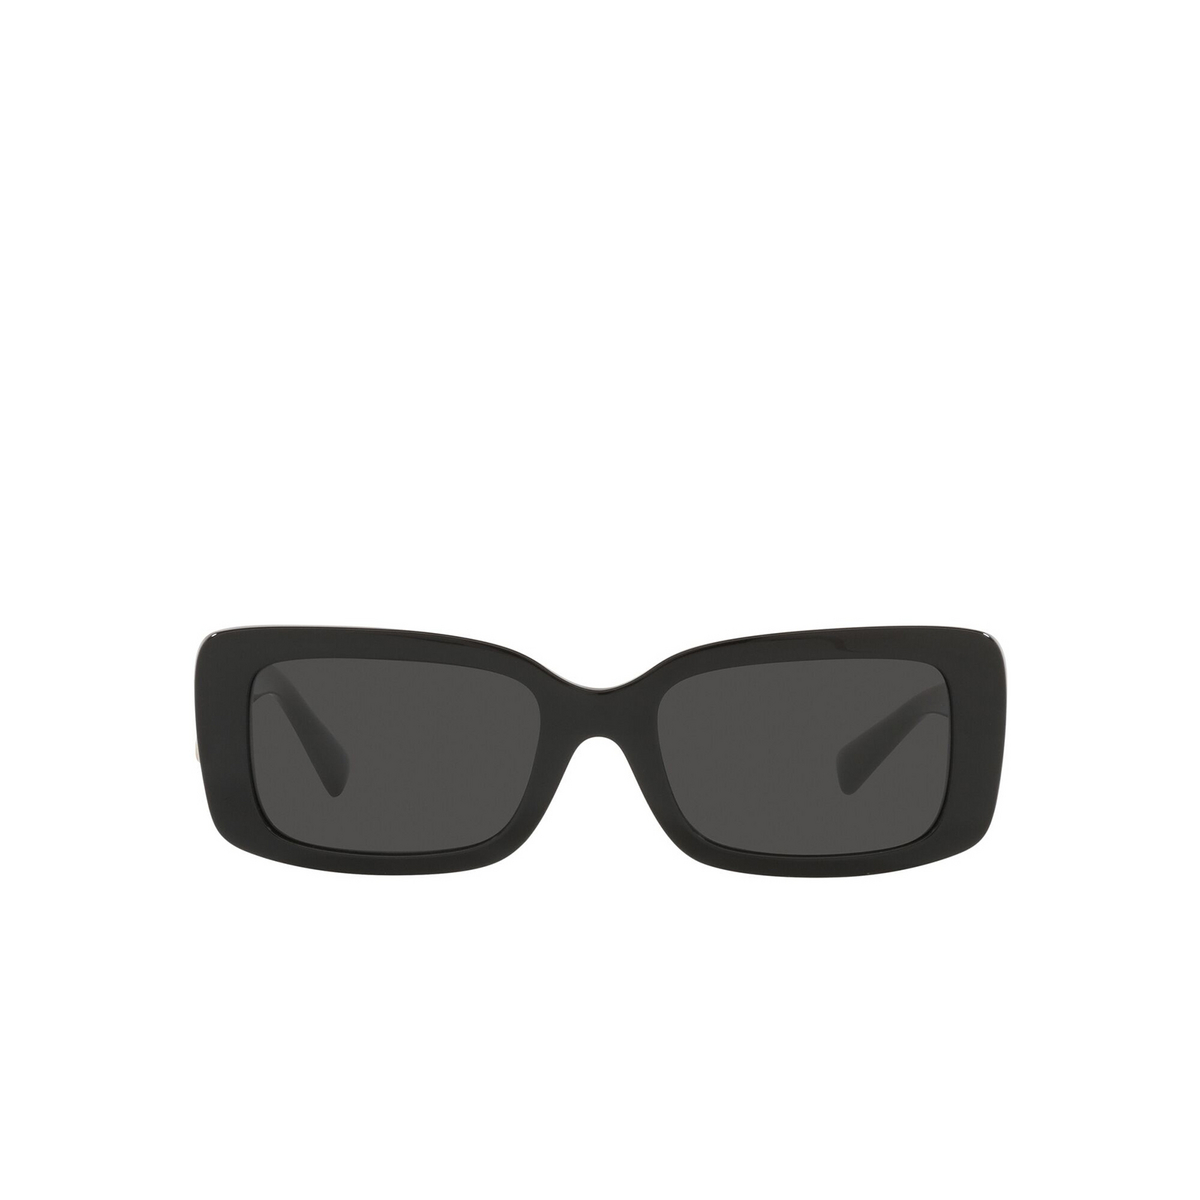 Valentino® Rectangle Sunglasses: VA4108 color Black 500187 - front view.